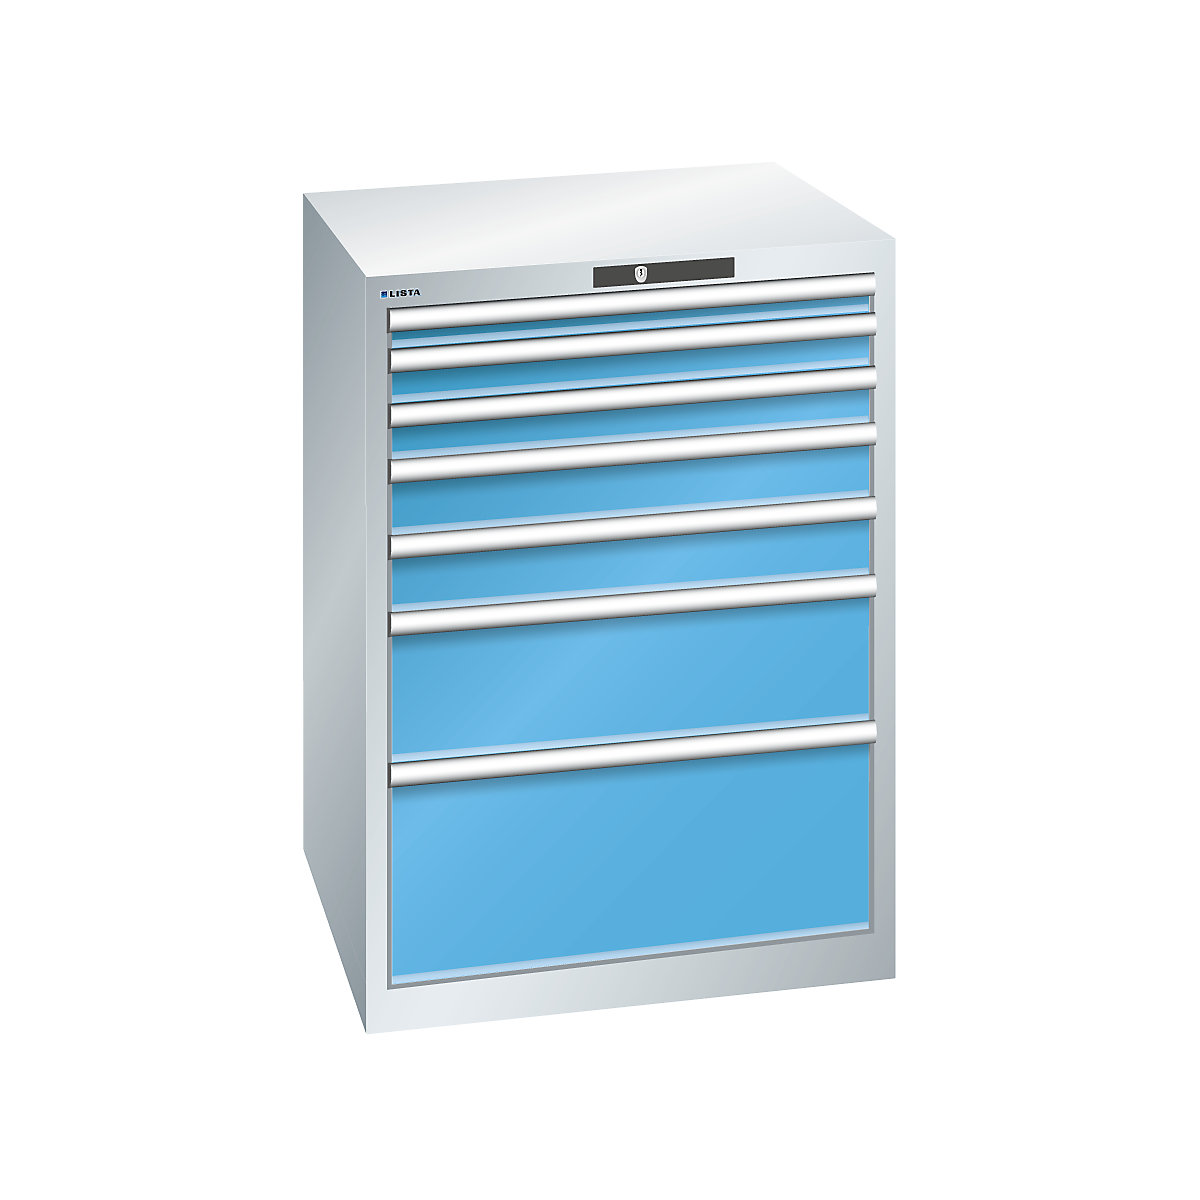 LISTA – Armoire à tiroirs en tôle d'acier, h x l 1000 x 717 mm, 7 tiroirs, gris clair / bleu clair